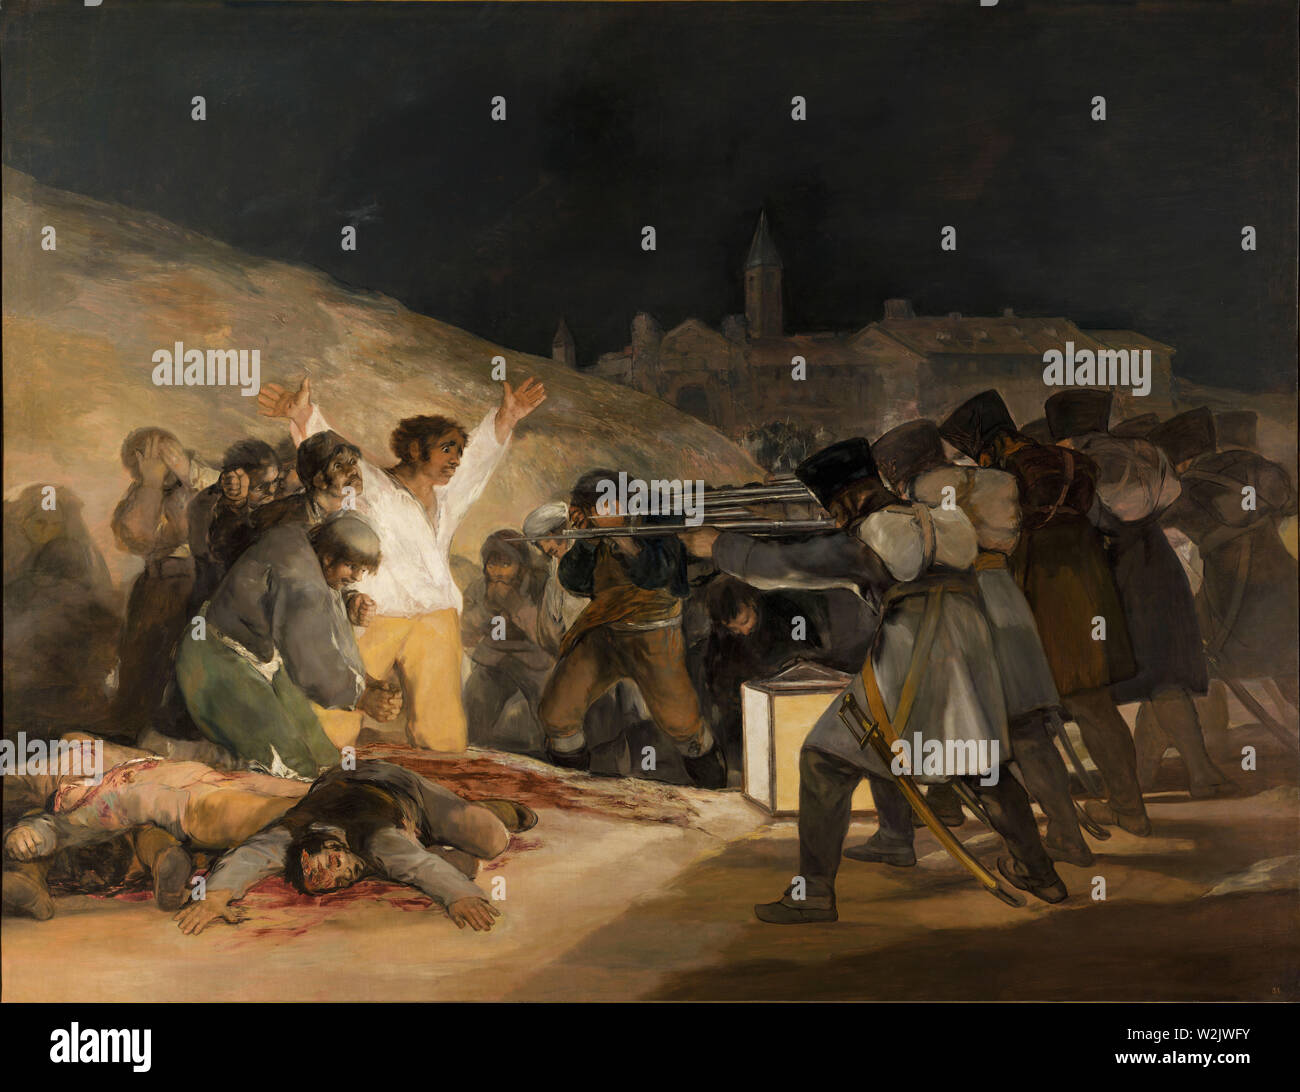 Ausführung der Madrid Rebellen durch einen französischen Exekutionskommando am dritten Mai 1808, wie durch Francisco Goya gemalt. Stockfoto